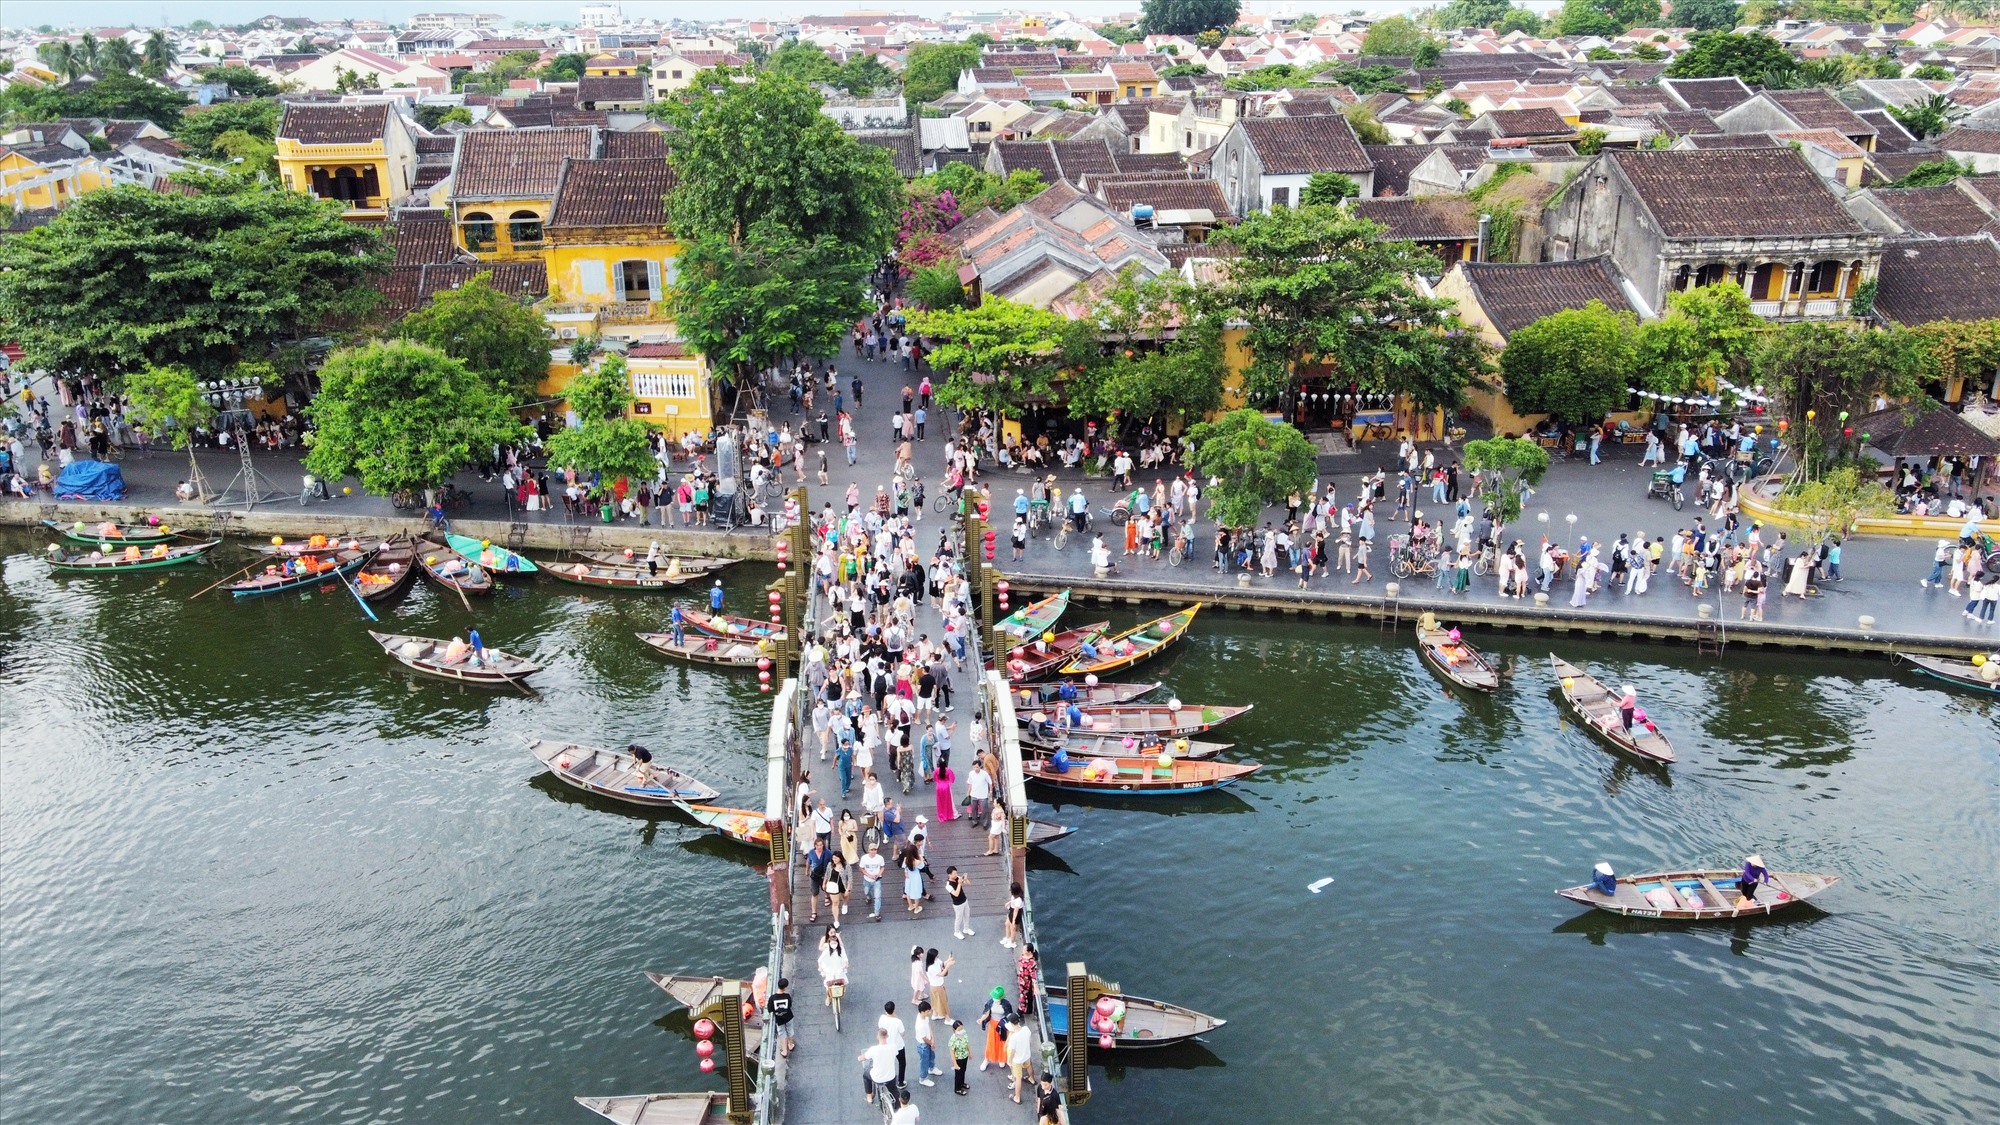 Hài hòa thị hiếu các thị trường khách ở Quảng Nam